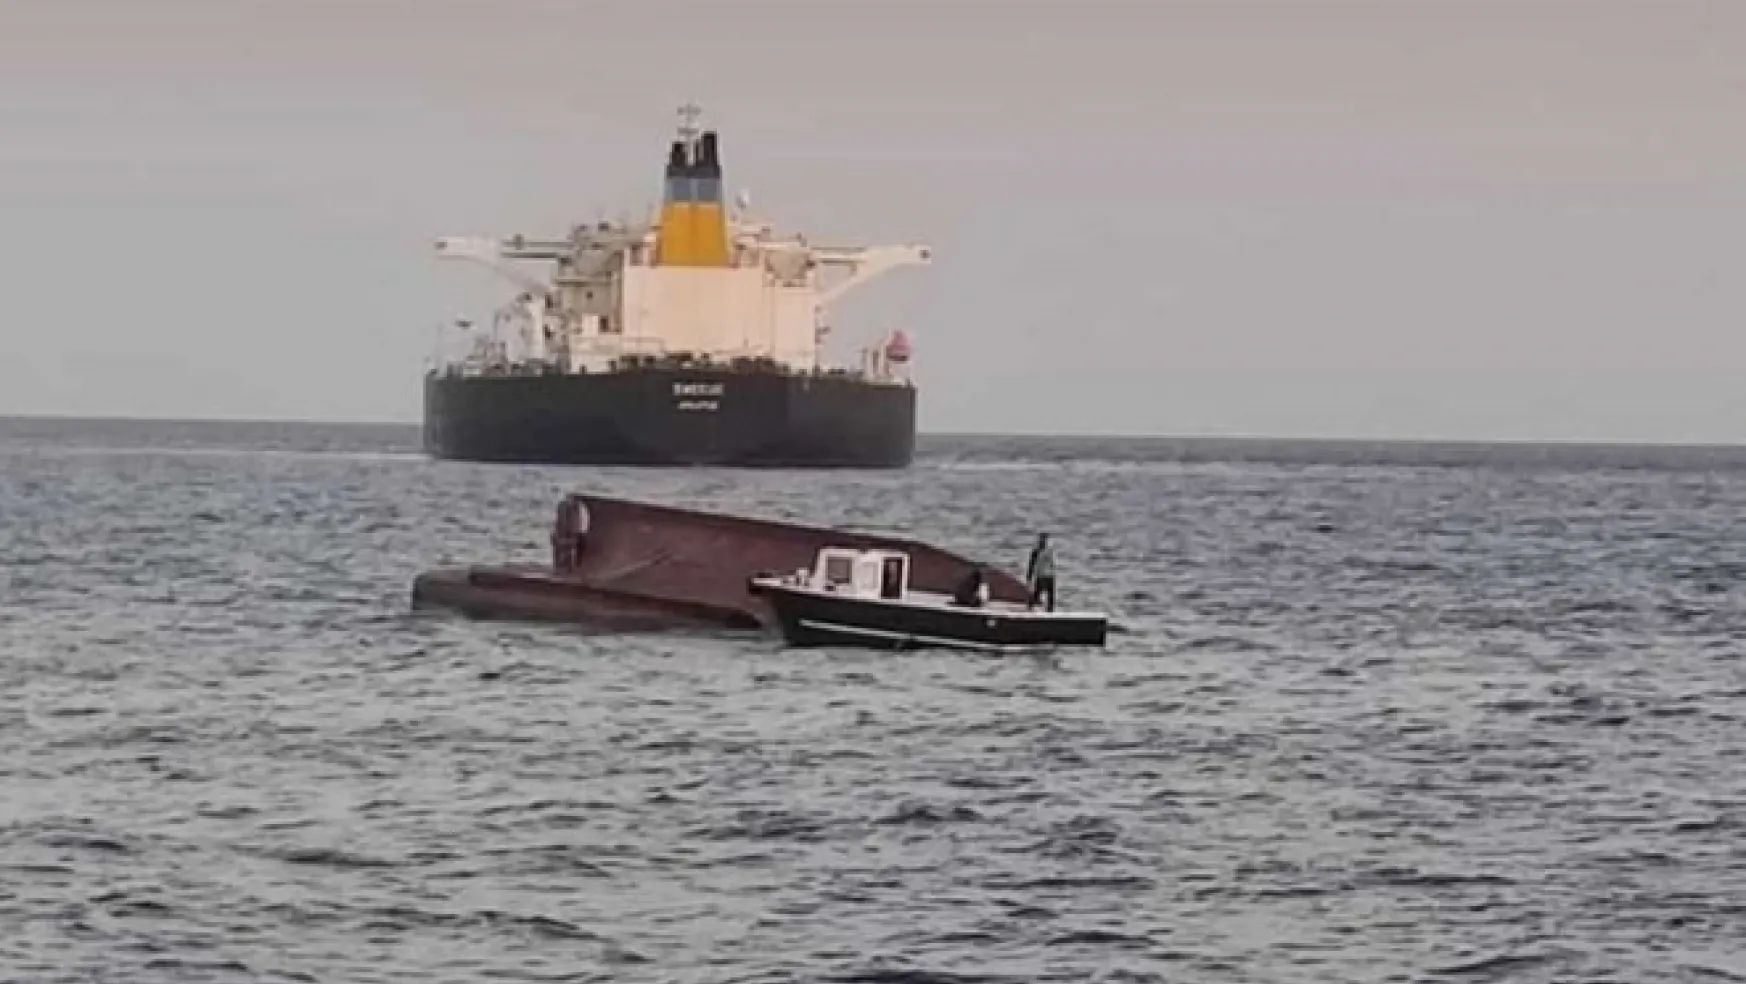 Yunanistan Tankeri ile Türk Balıkçı Teknesi Çarpıştı: 4 Ölü